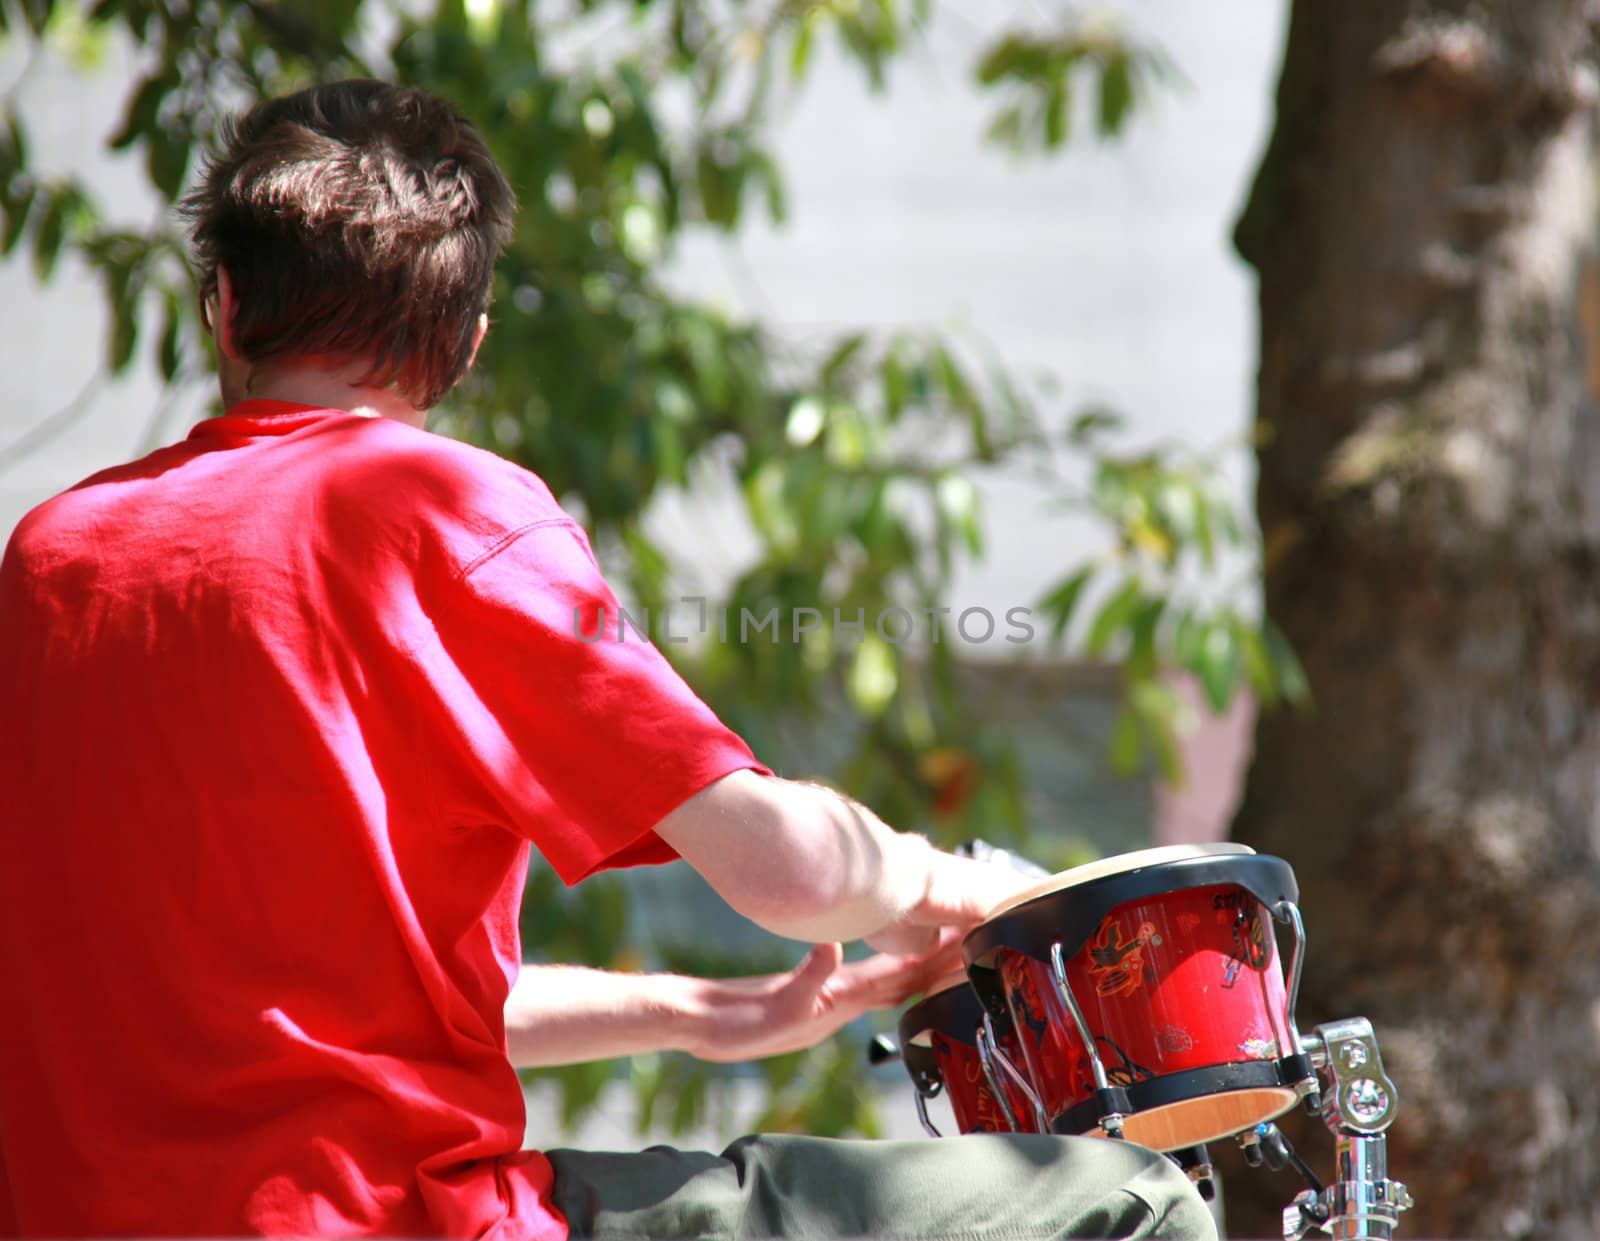 Jazz drummer performing outdoors in concert.